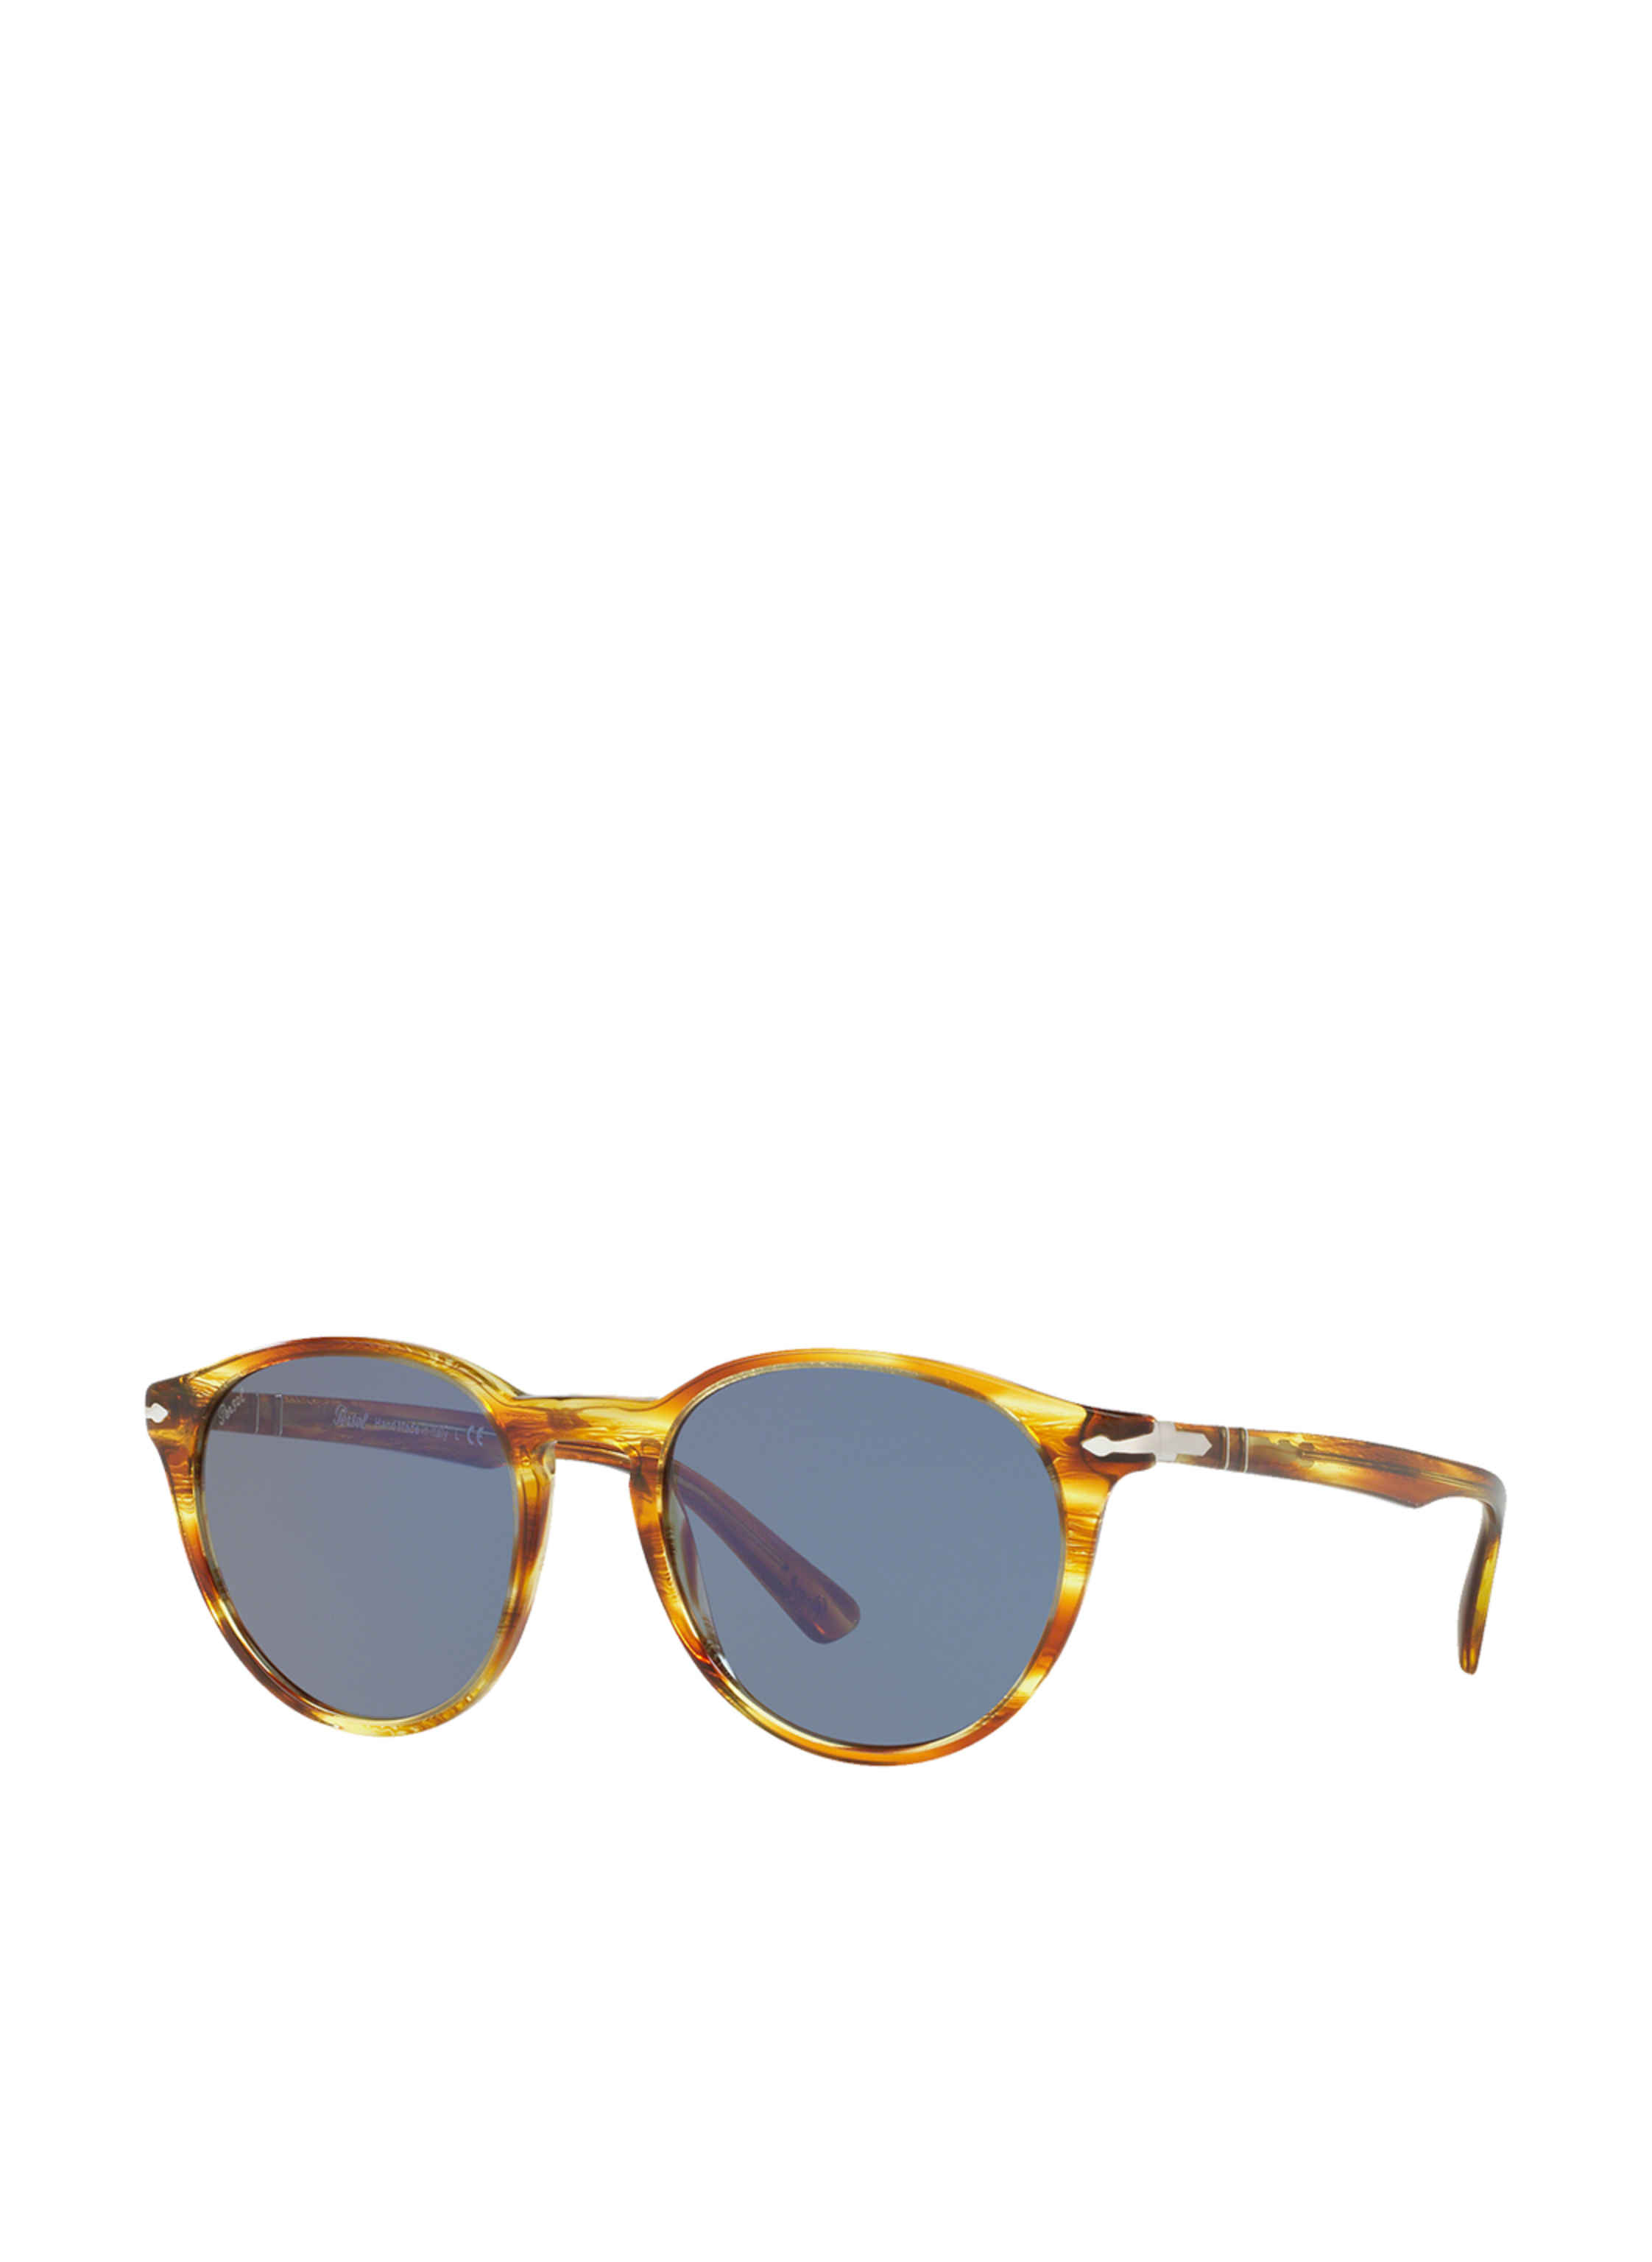 Persol Brand New Persol Sunglasses PO3152S 113356 Gray blue Man 8056597374569 